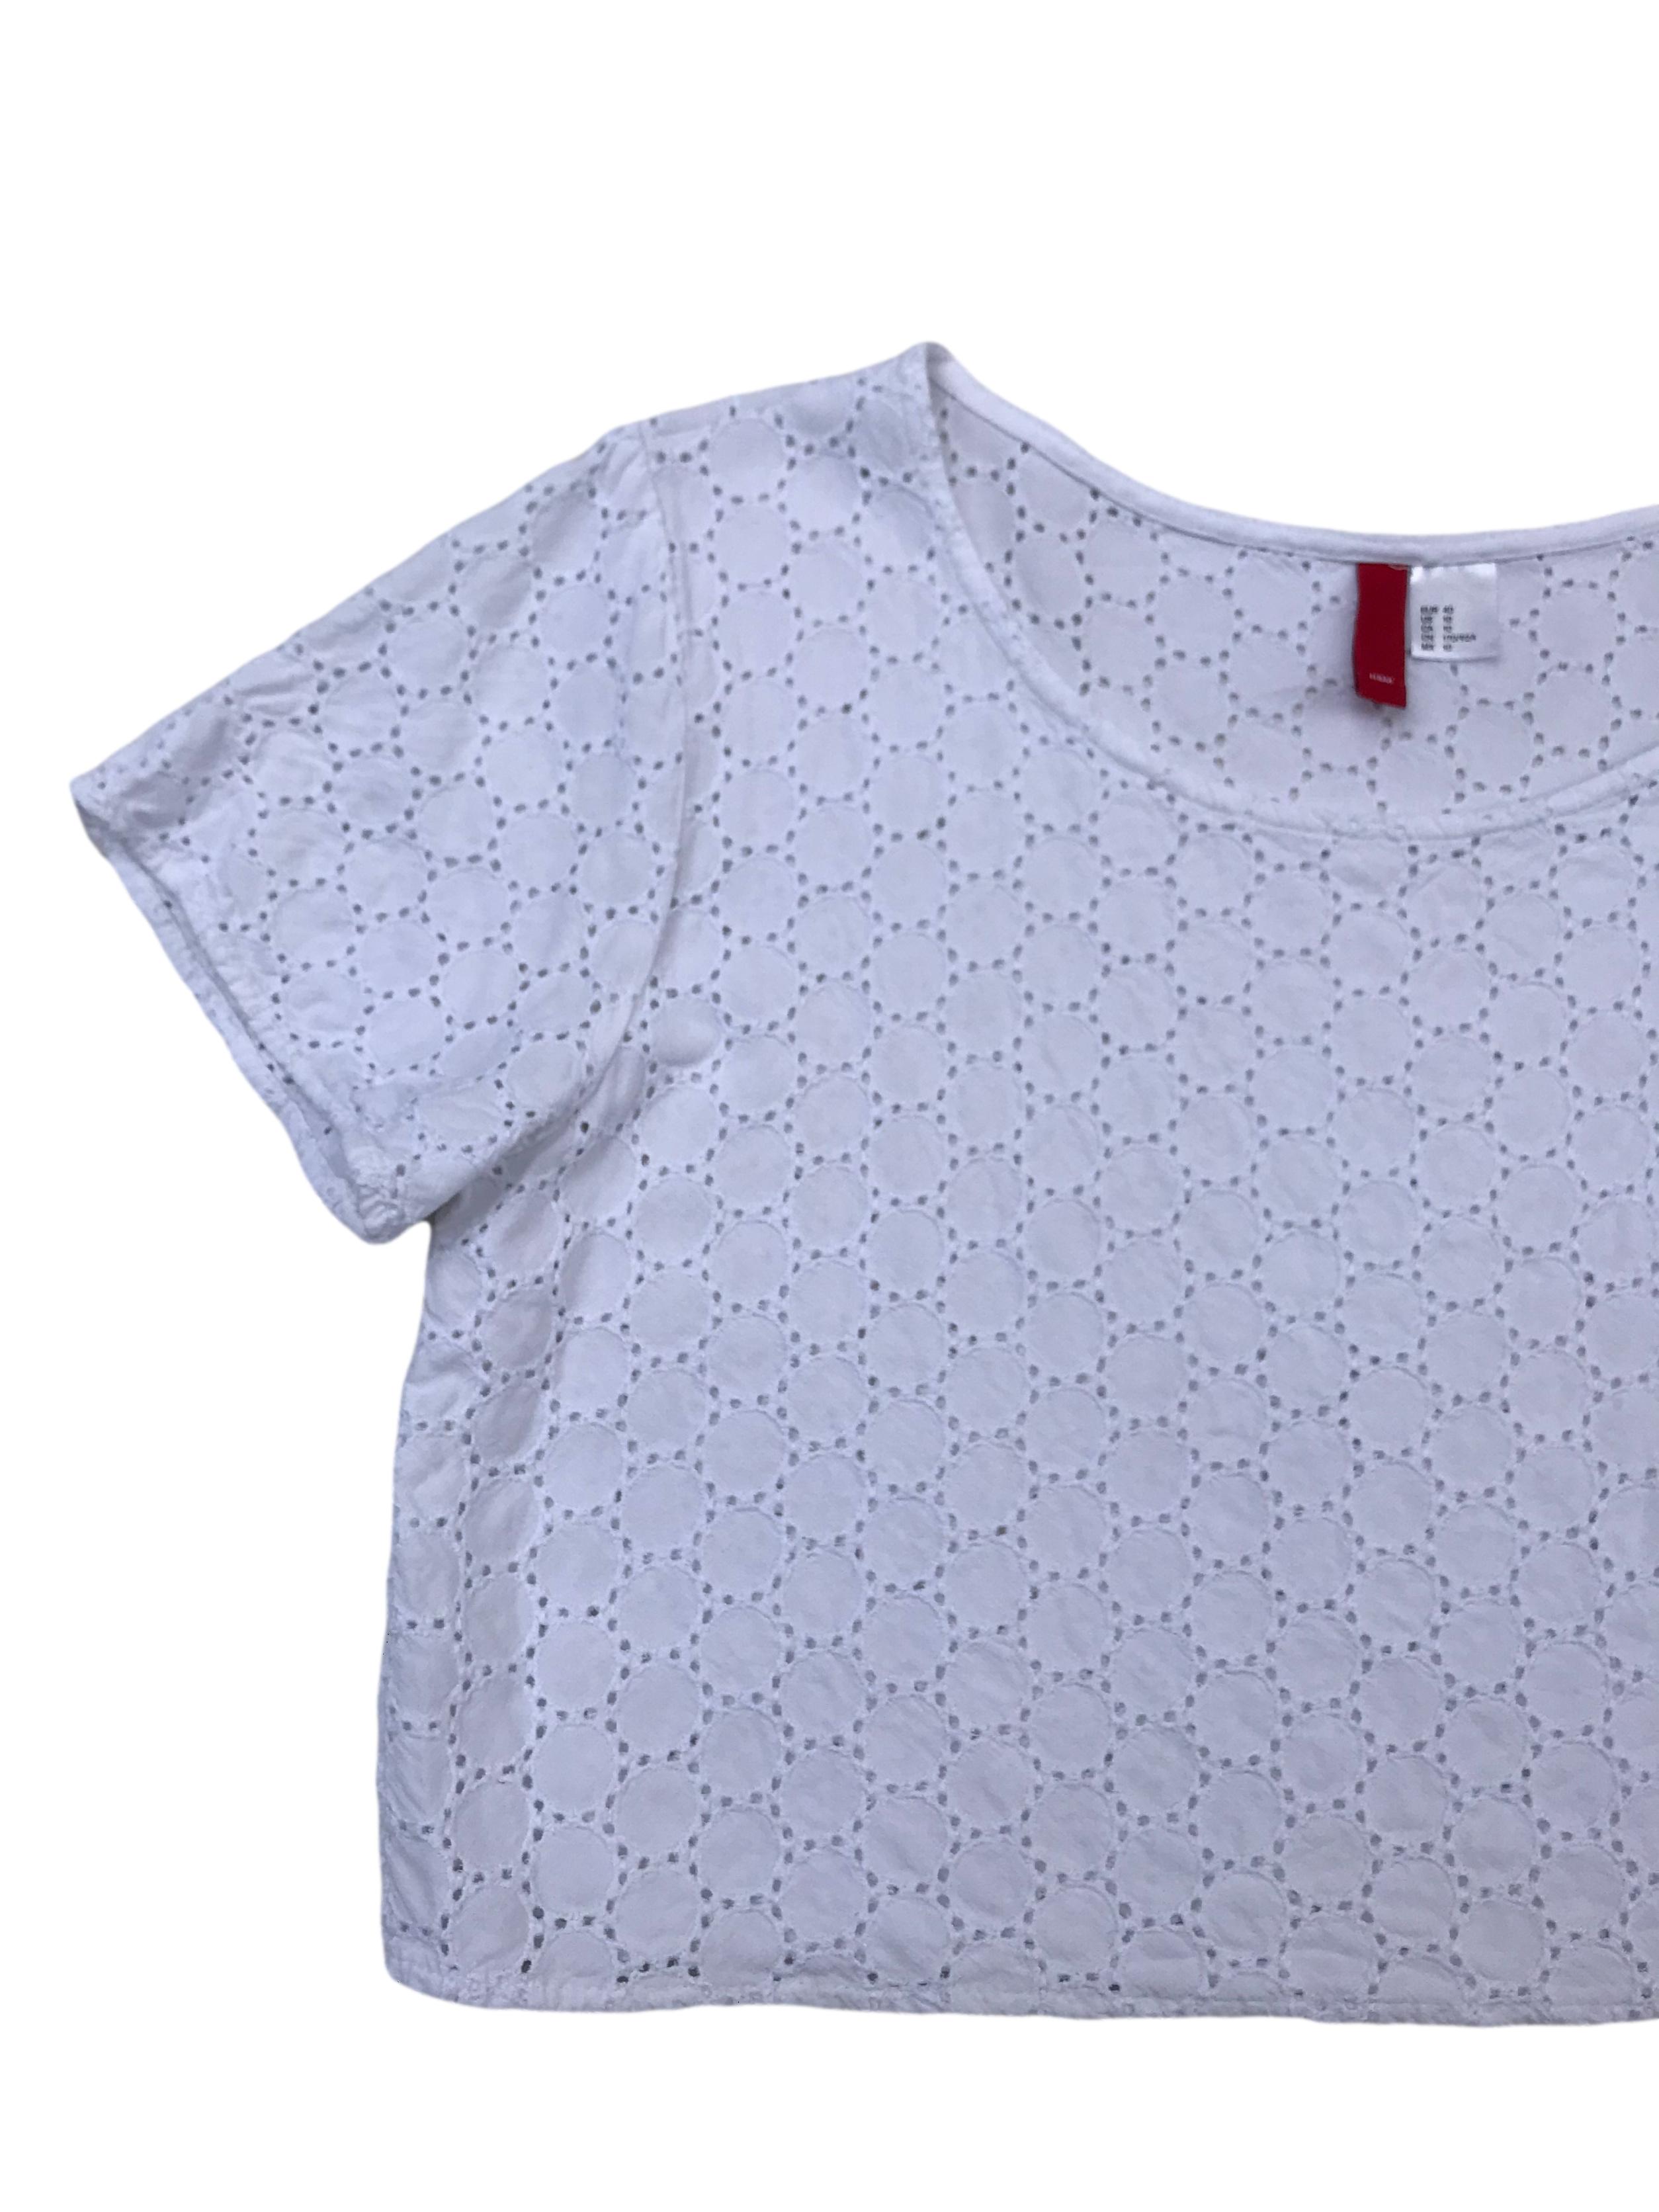 Blusa crop H&M blanca de algodón con textura en círculos y detalles calados. Largo 40cm